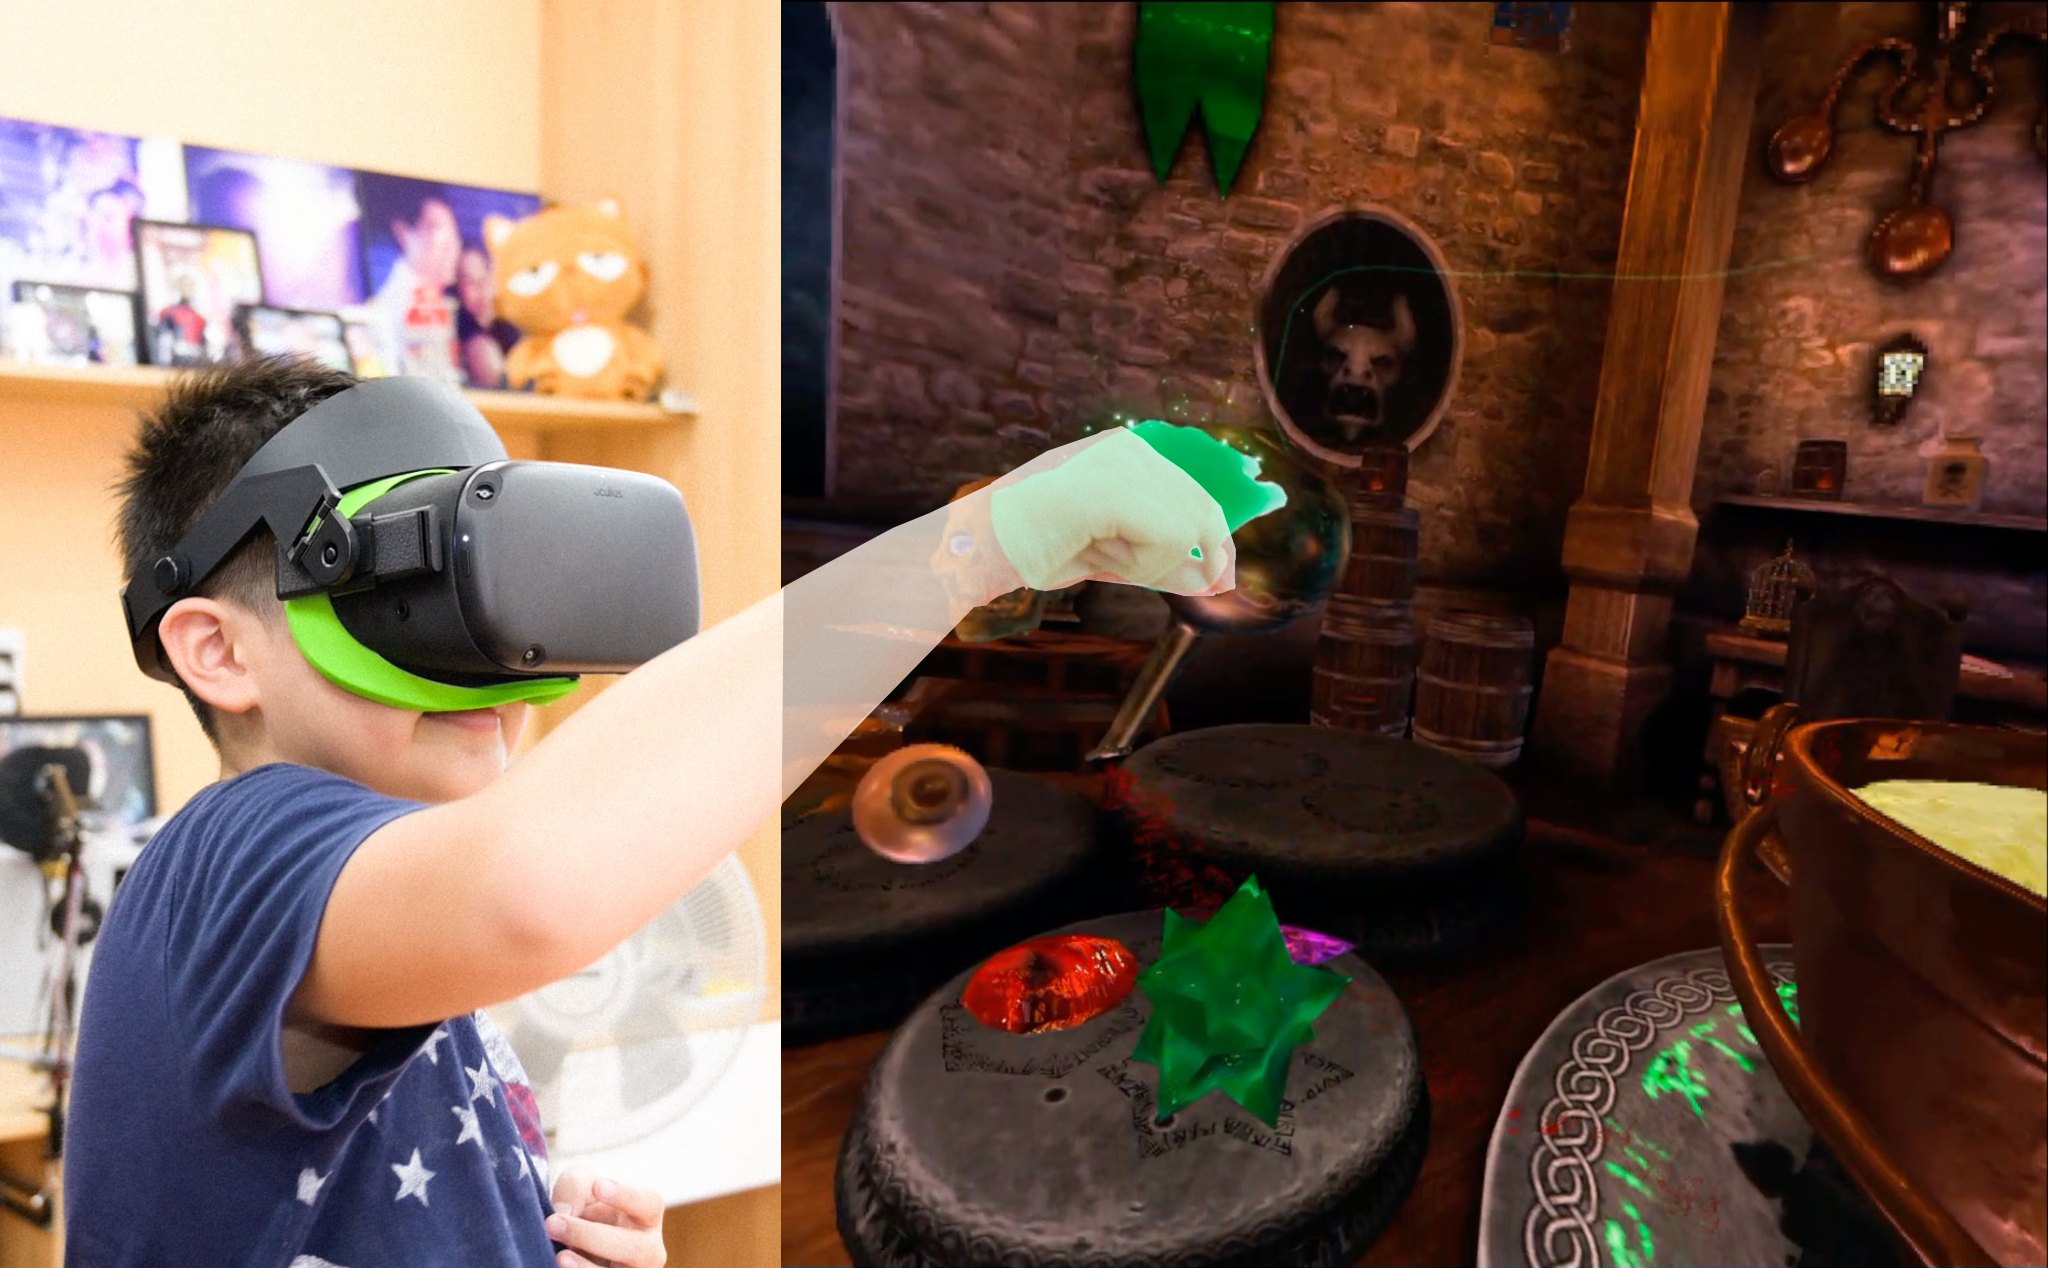 Thay cái đai cho Oculus Quest đeo êm hơn + Demo chơi game VR bằng tay không cần điều khiển